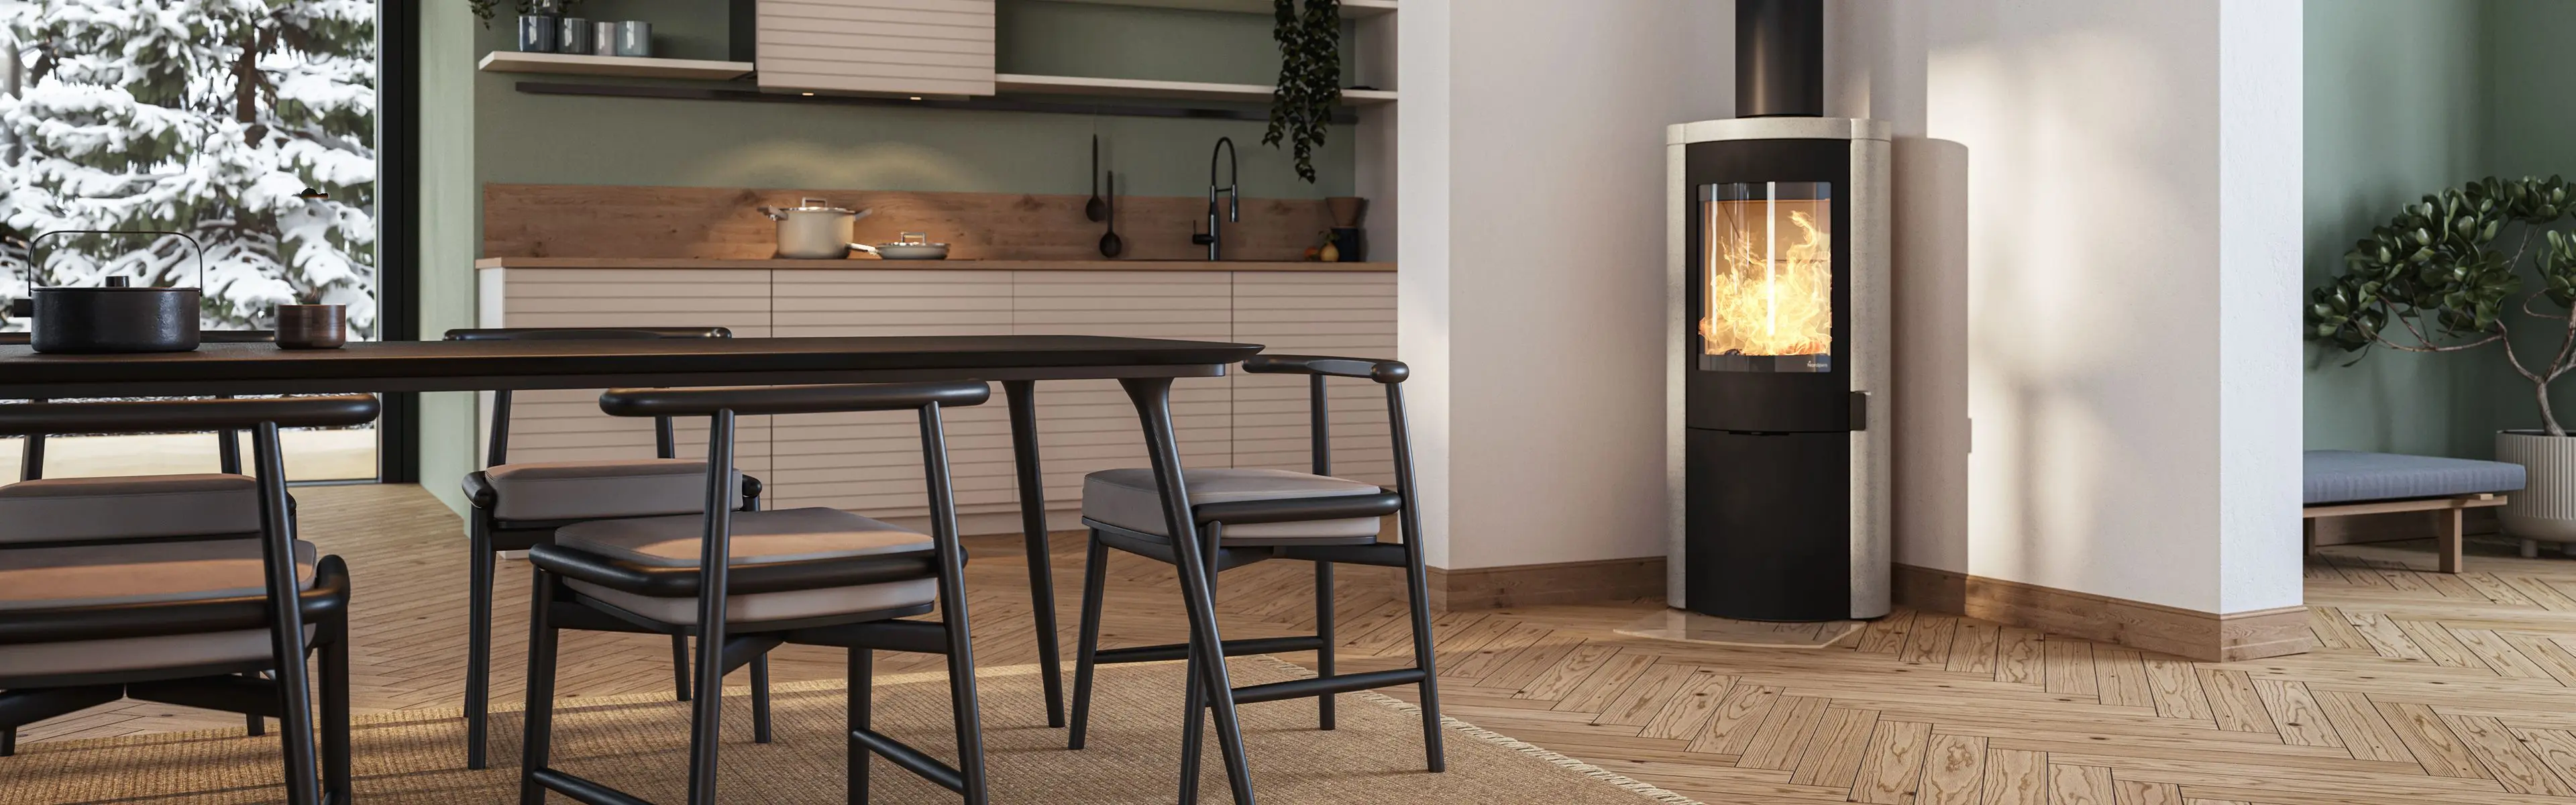 moderne kjøkken med designmøbler og peisen Origo fra Nordpeis